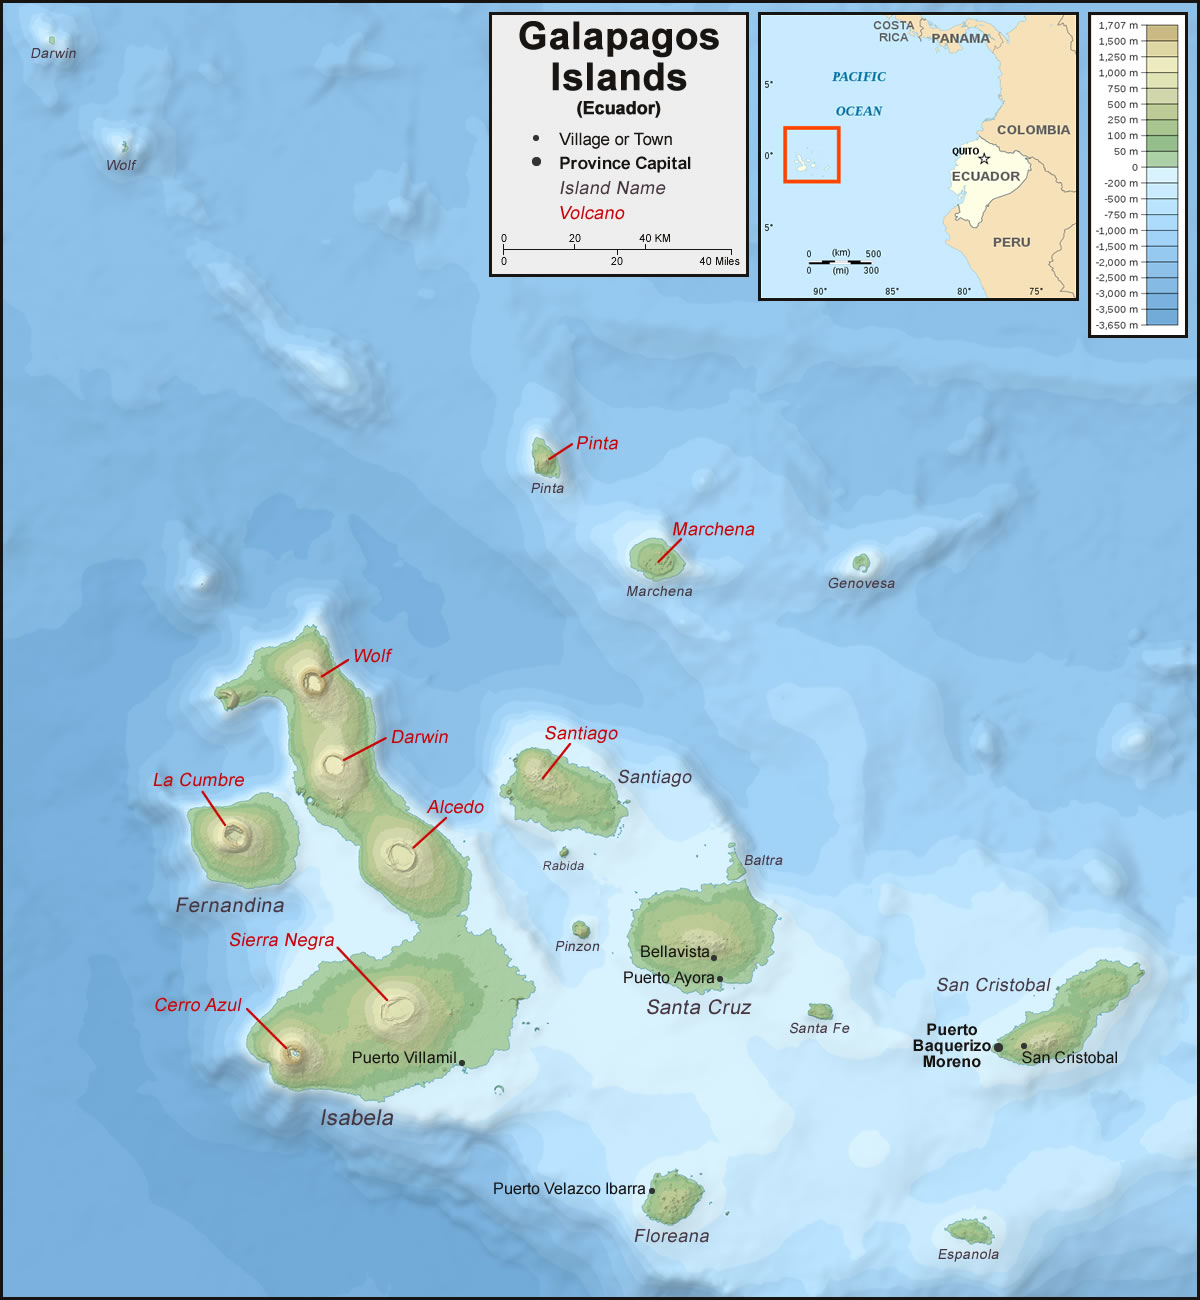 Galapagos Islands political map